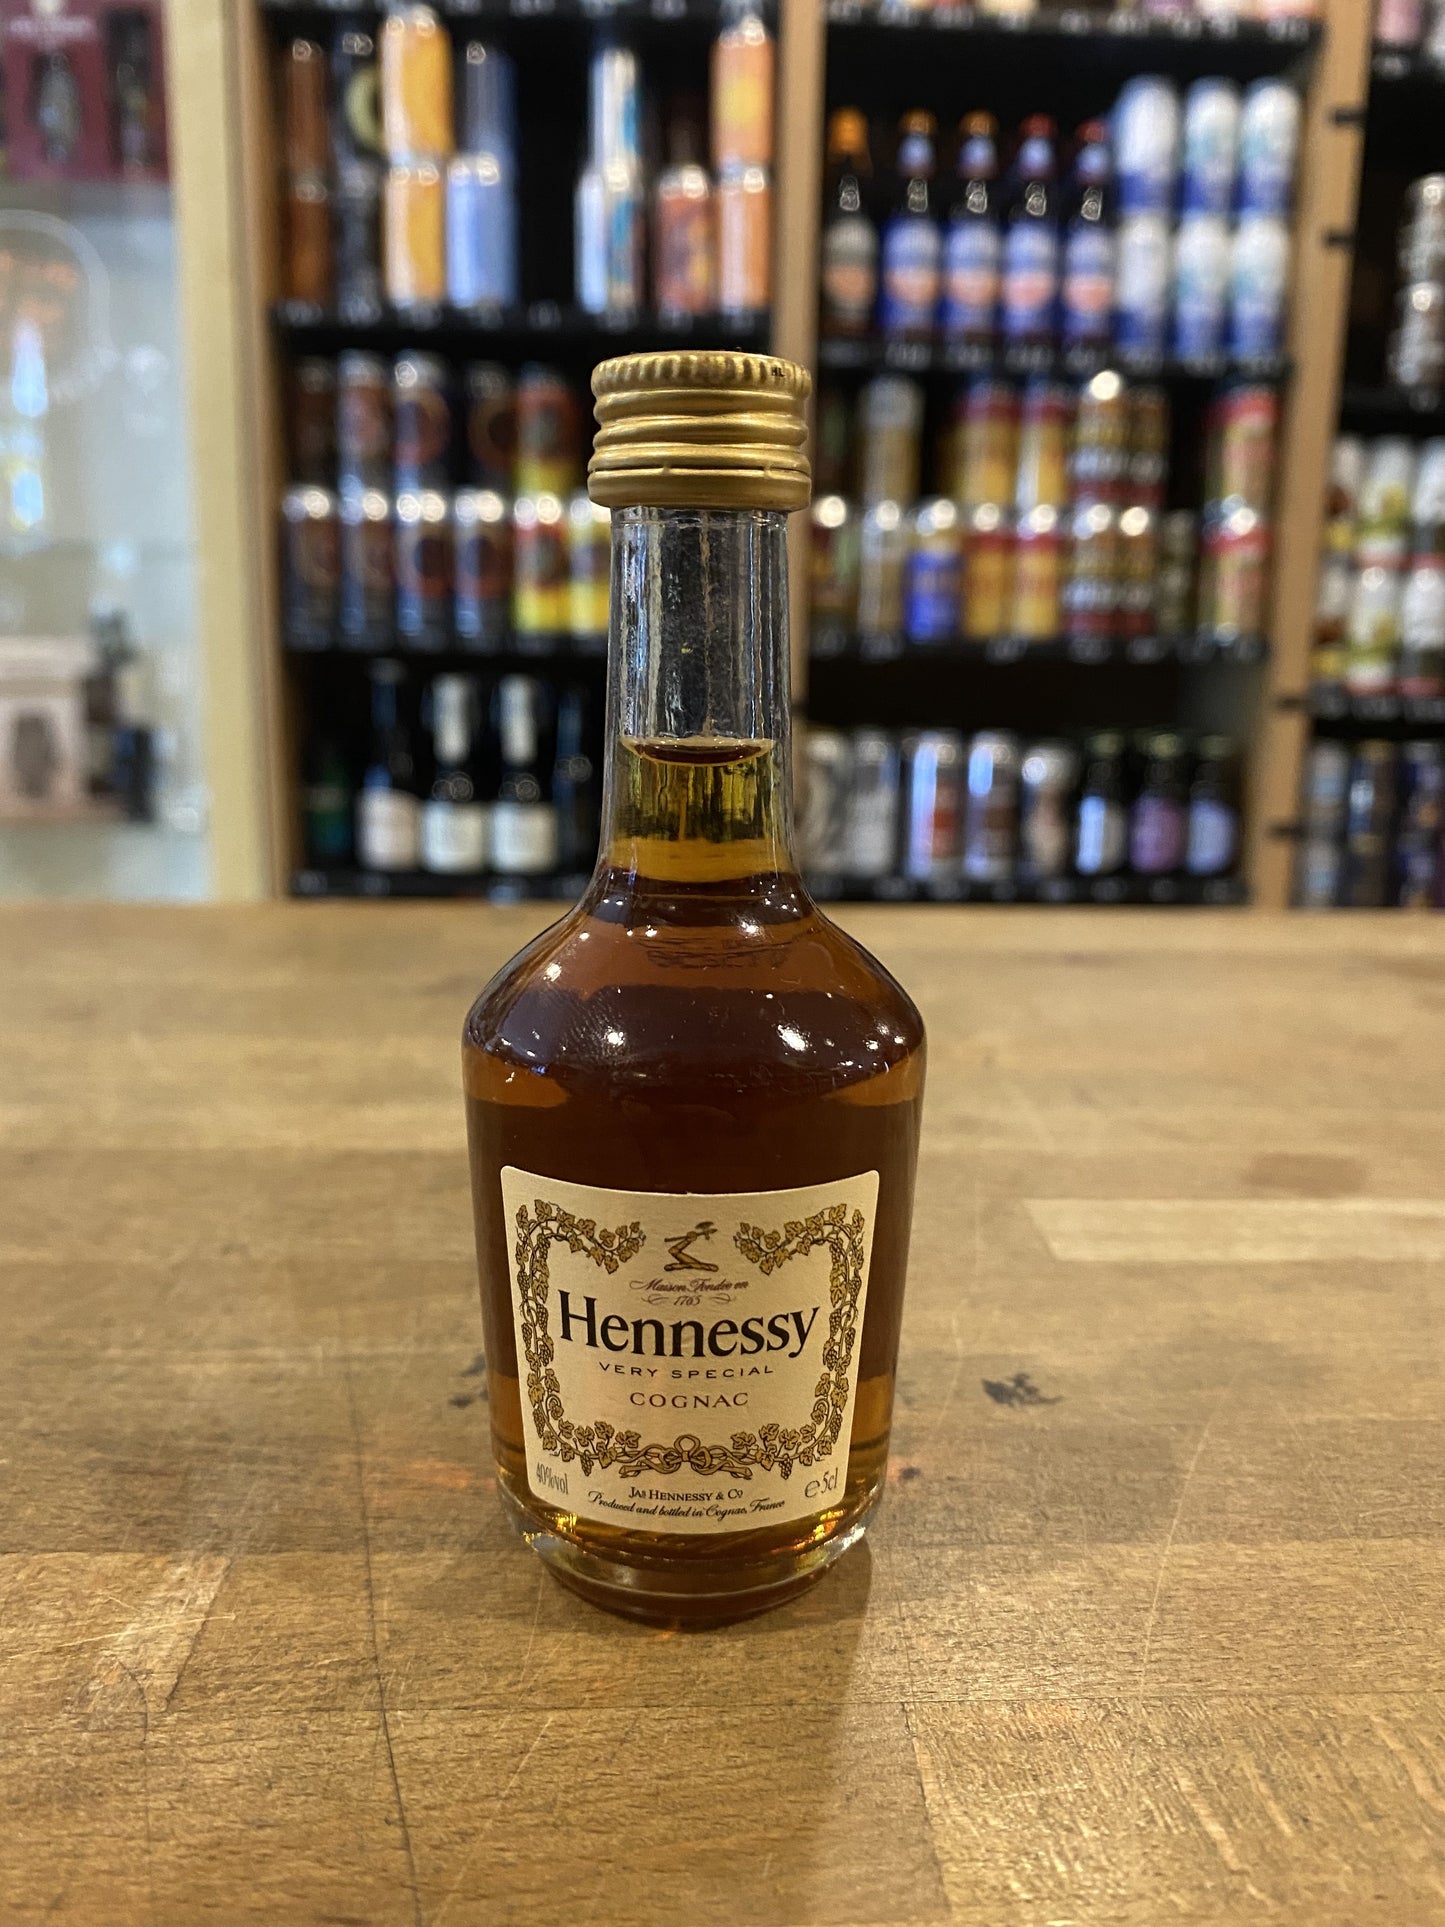 Hennessy VS Cognac Miniature 5cl